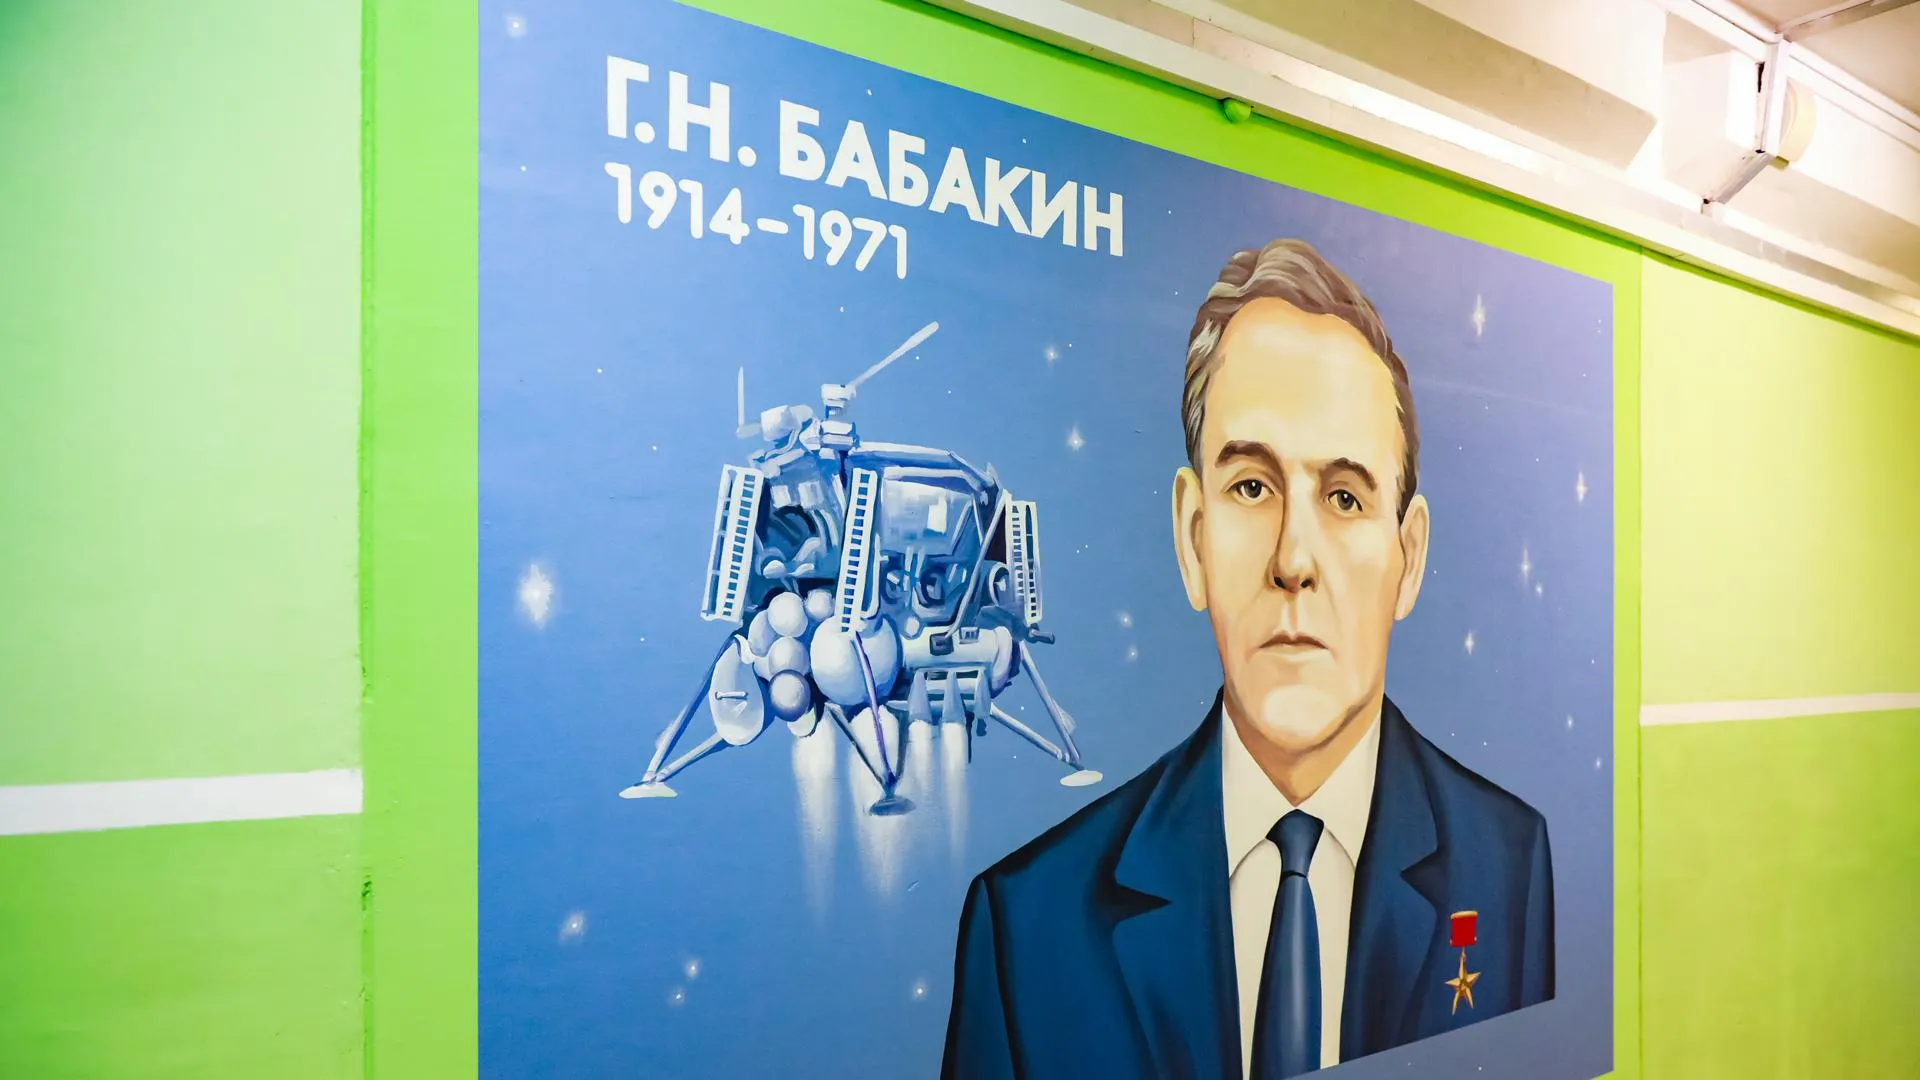 Граффити с конструктором Георгием Бабакиным появилось в школе «Лига первых» в Химках